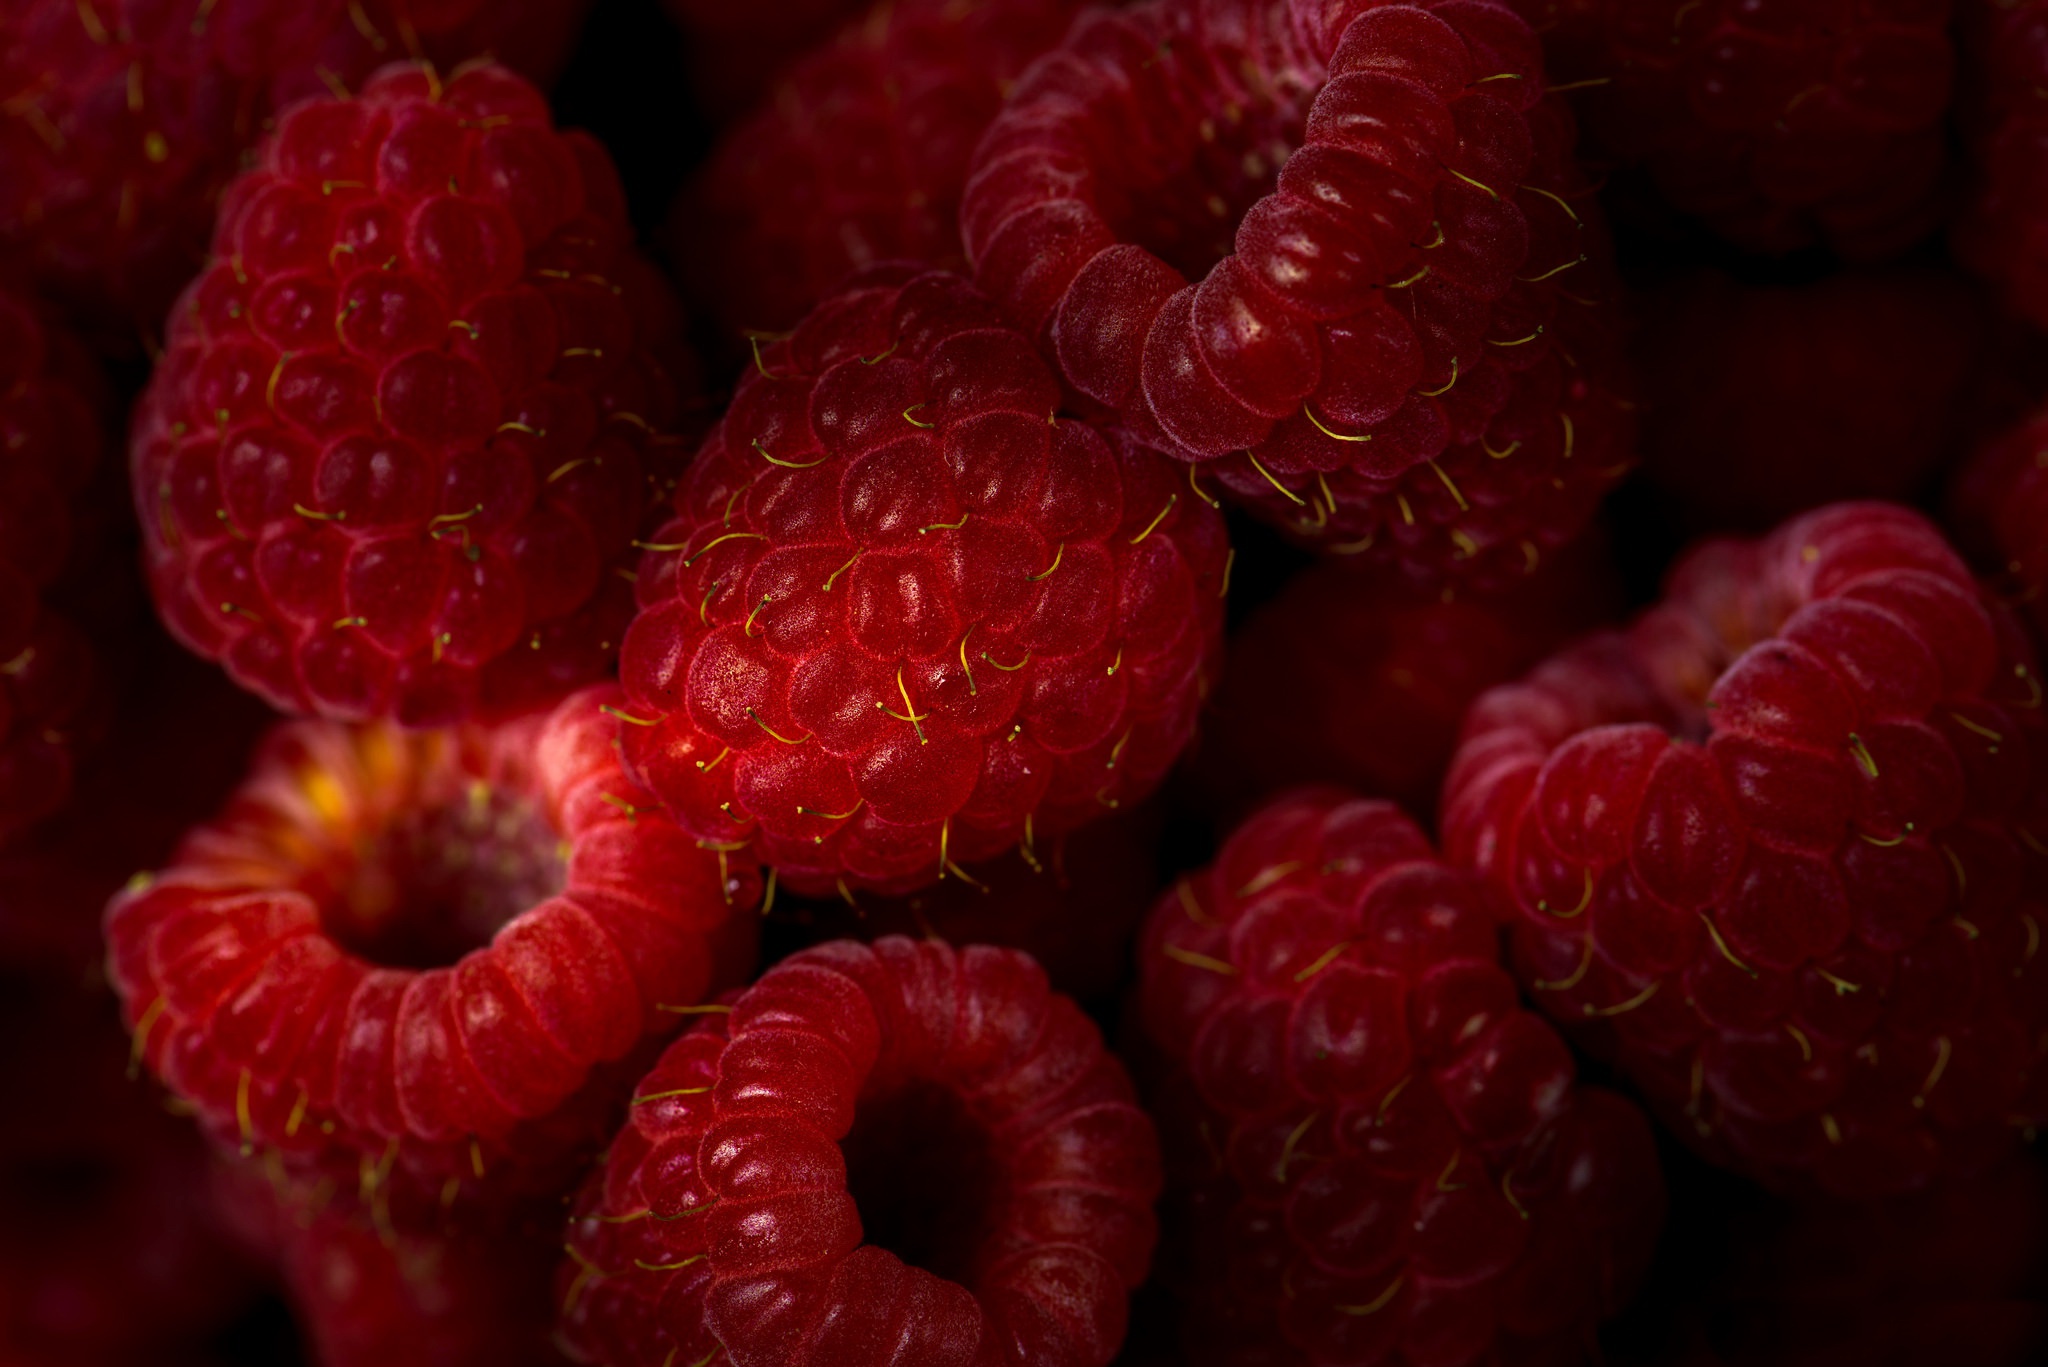 General 2048x1367 food fruit berries red raspberries